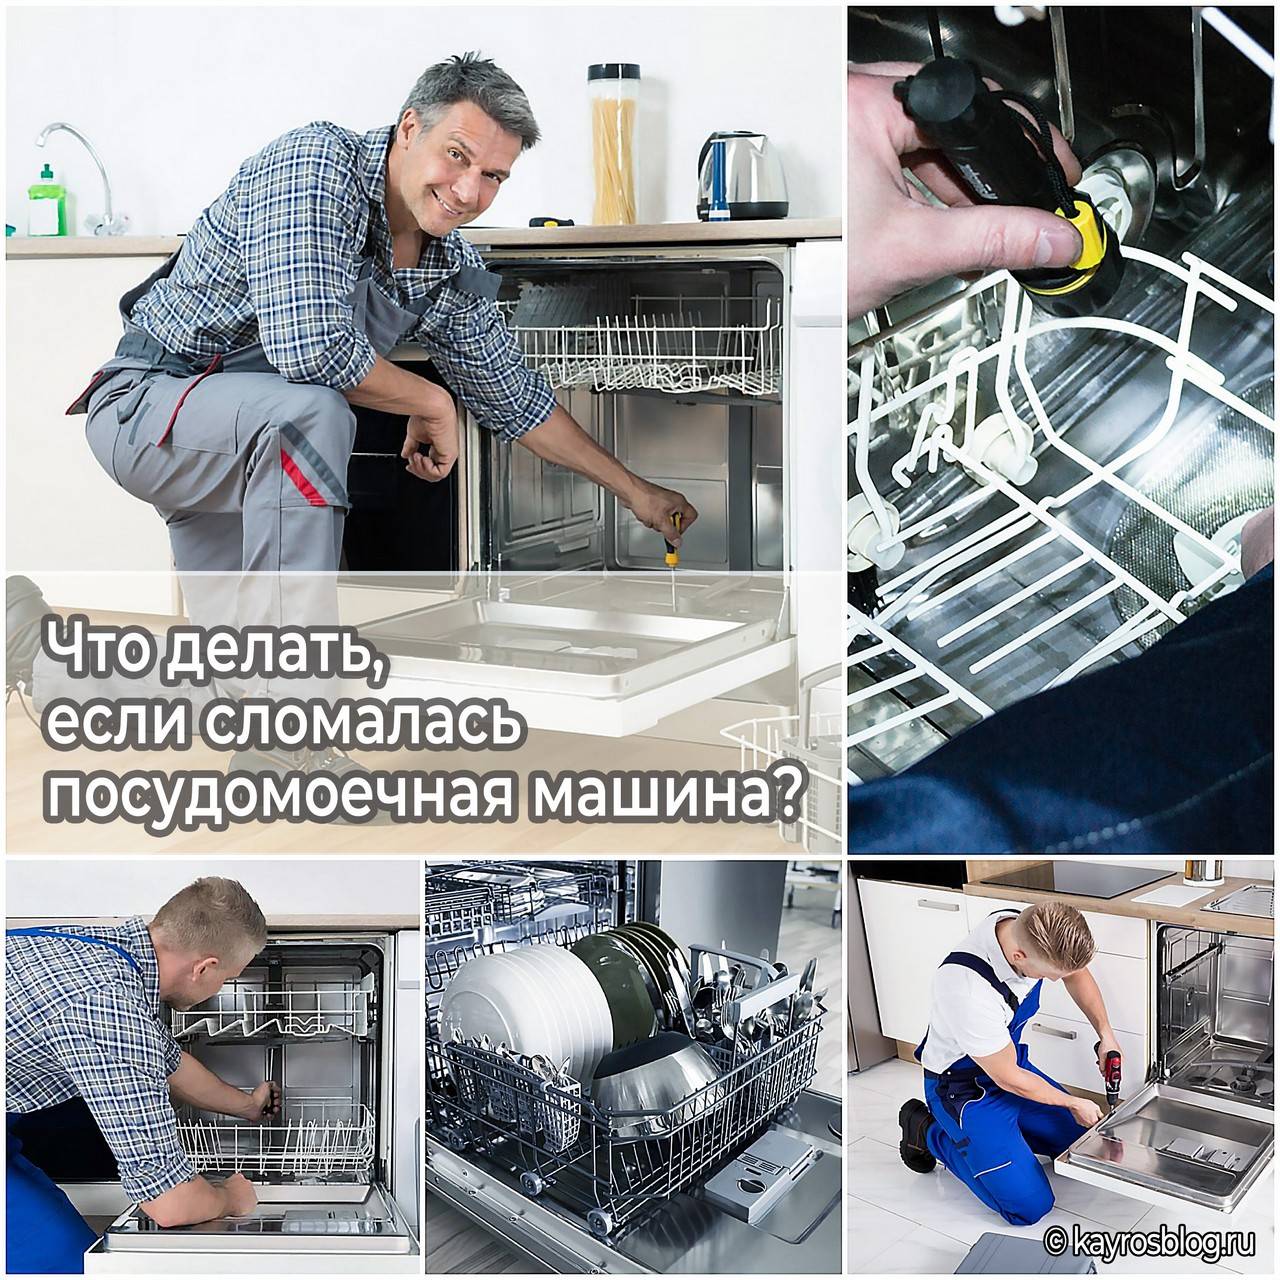 Не работает посудомоечная машина: что делать?⭐ инструкция по ремонту и починке посудомойки - гайд от home-tehno????